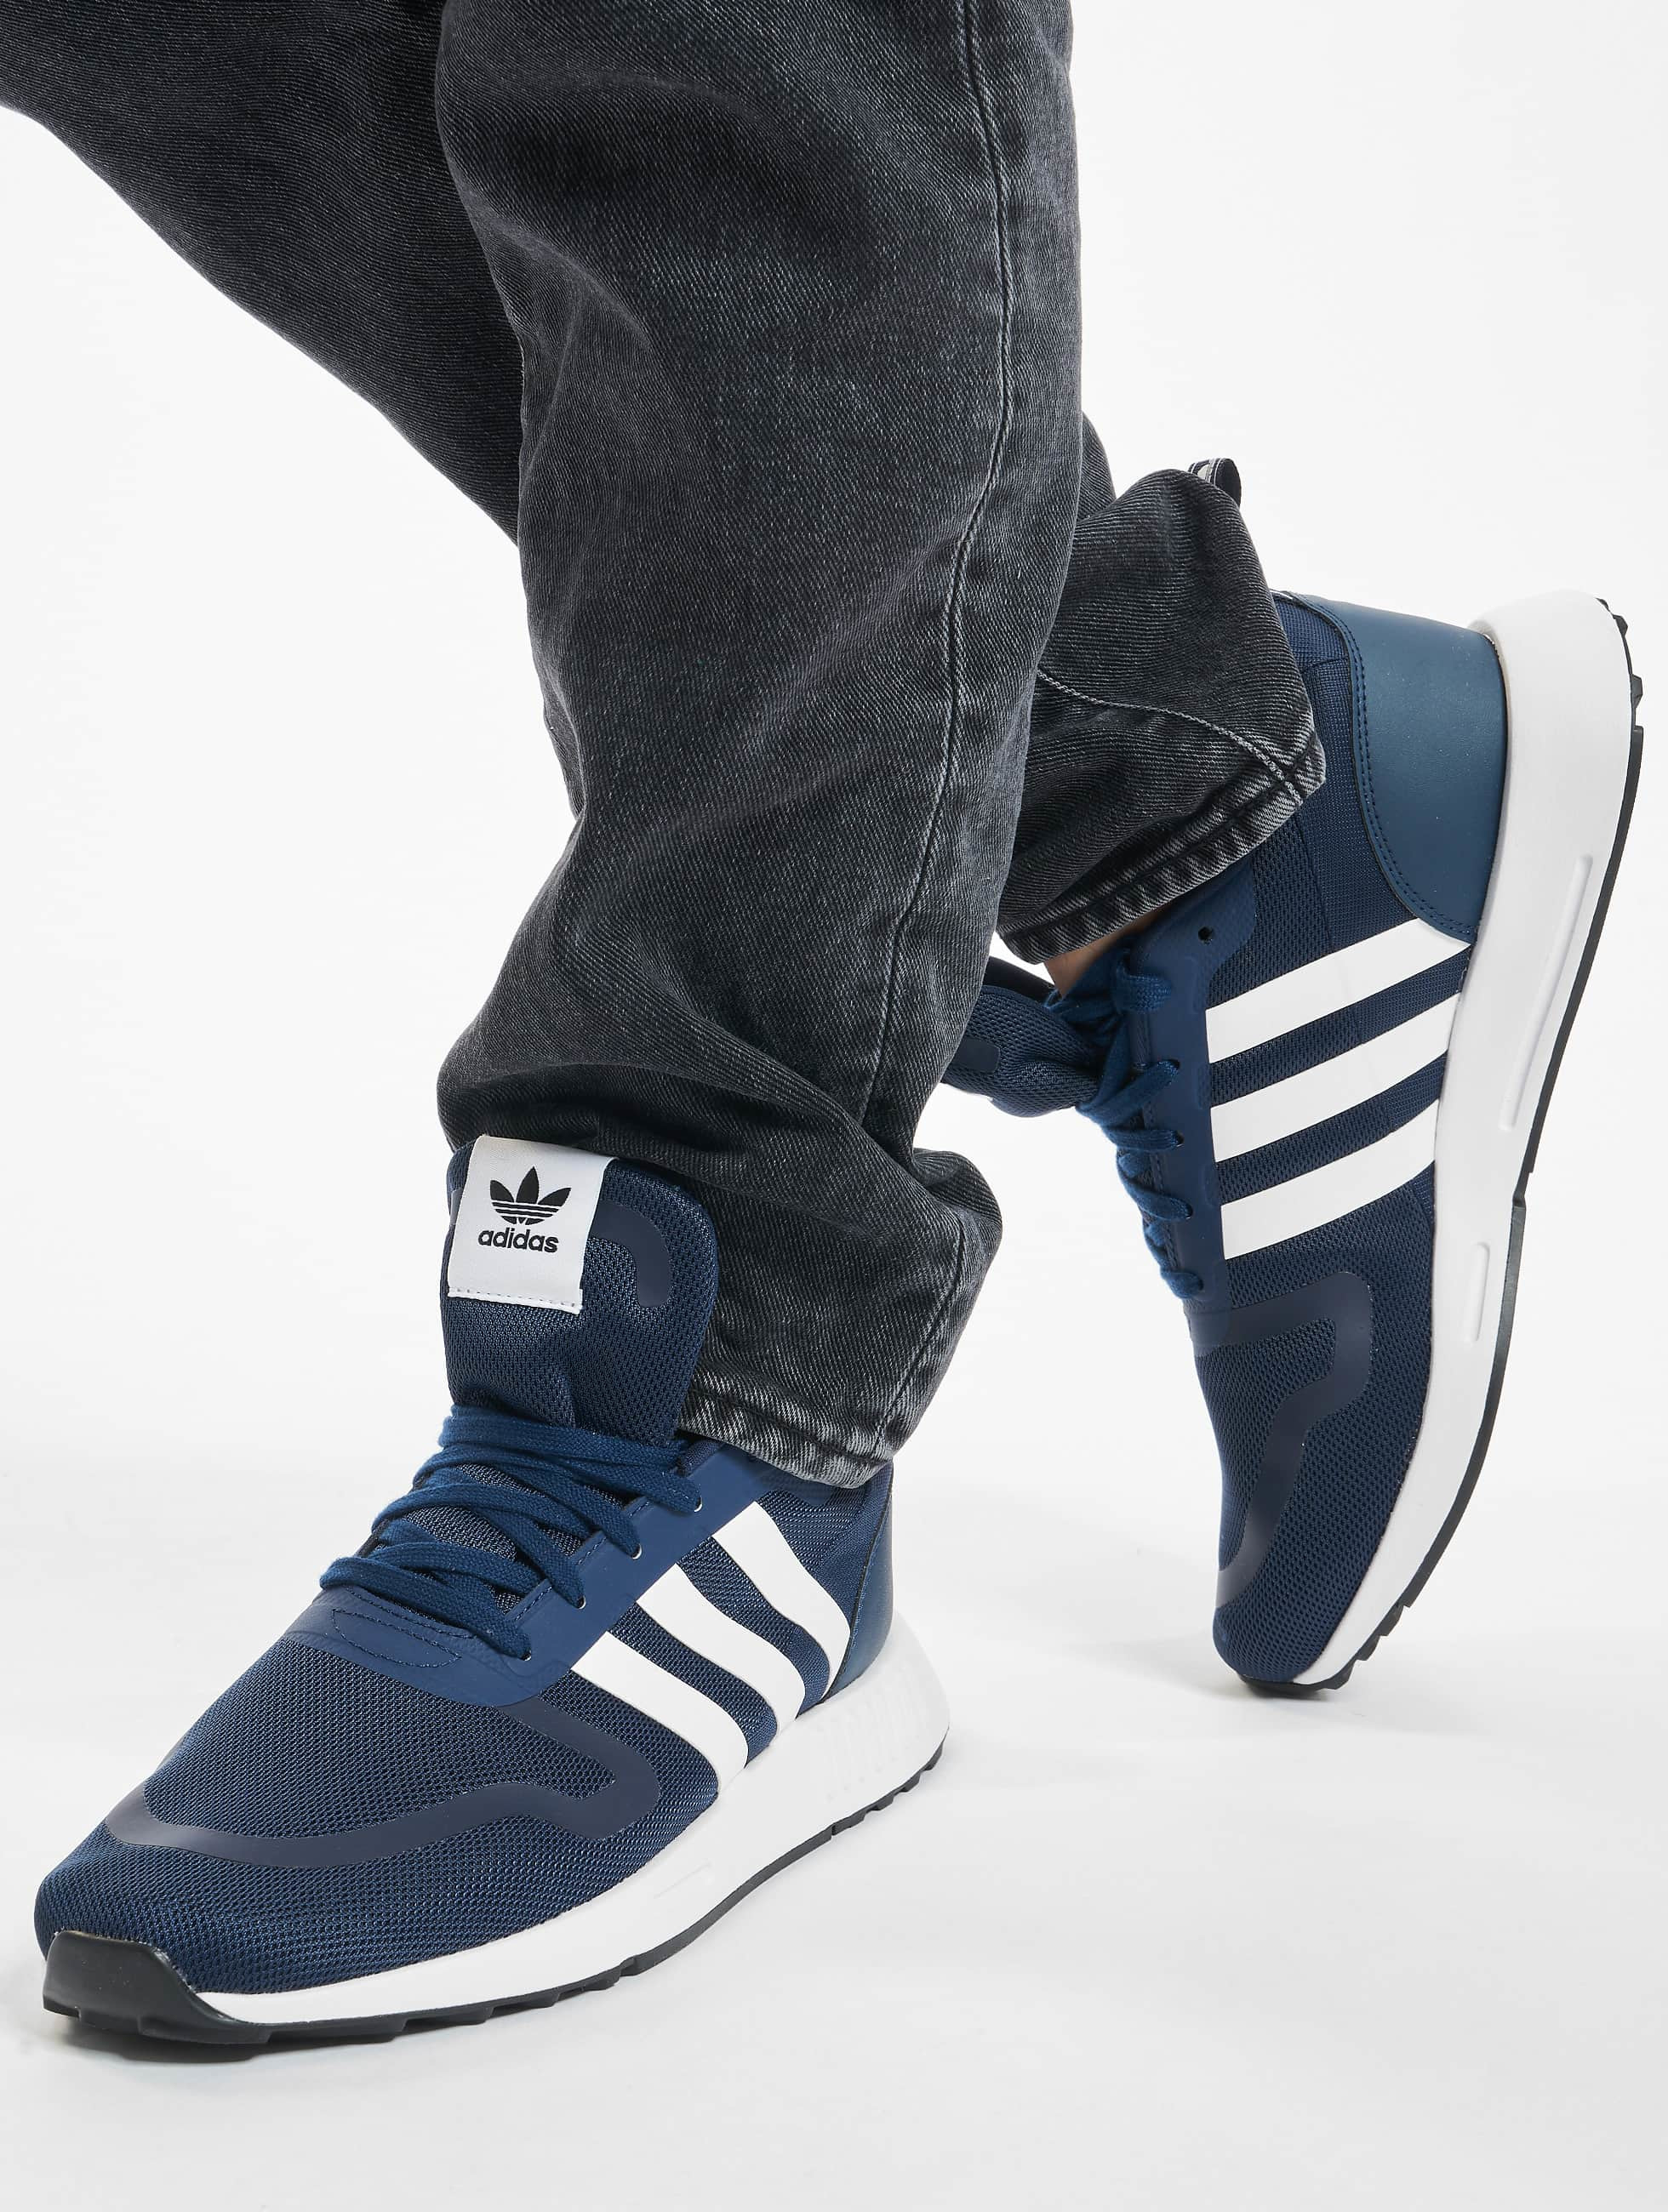 taal Digitaal Stadion adidas Originals schoen / sneaker Multix in blauw 831246